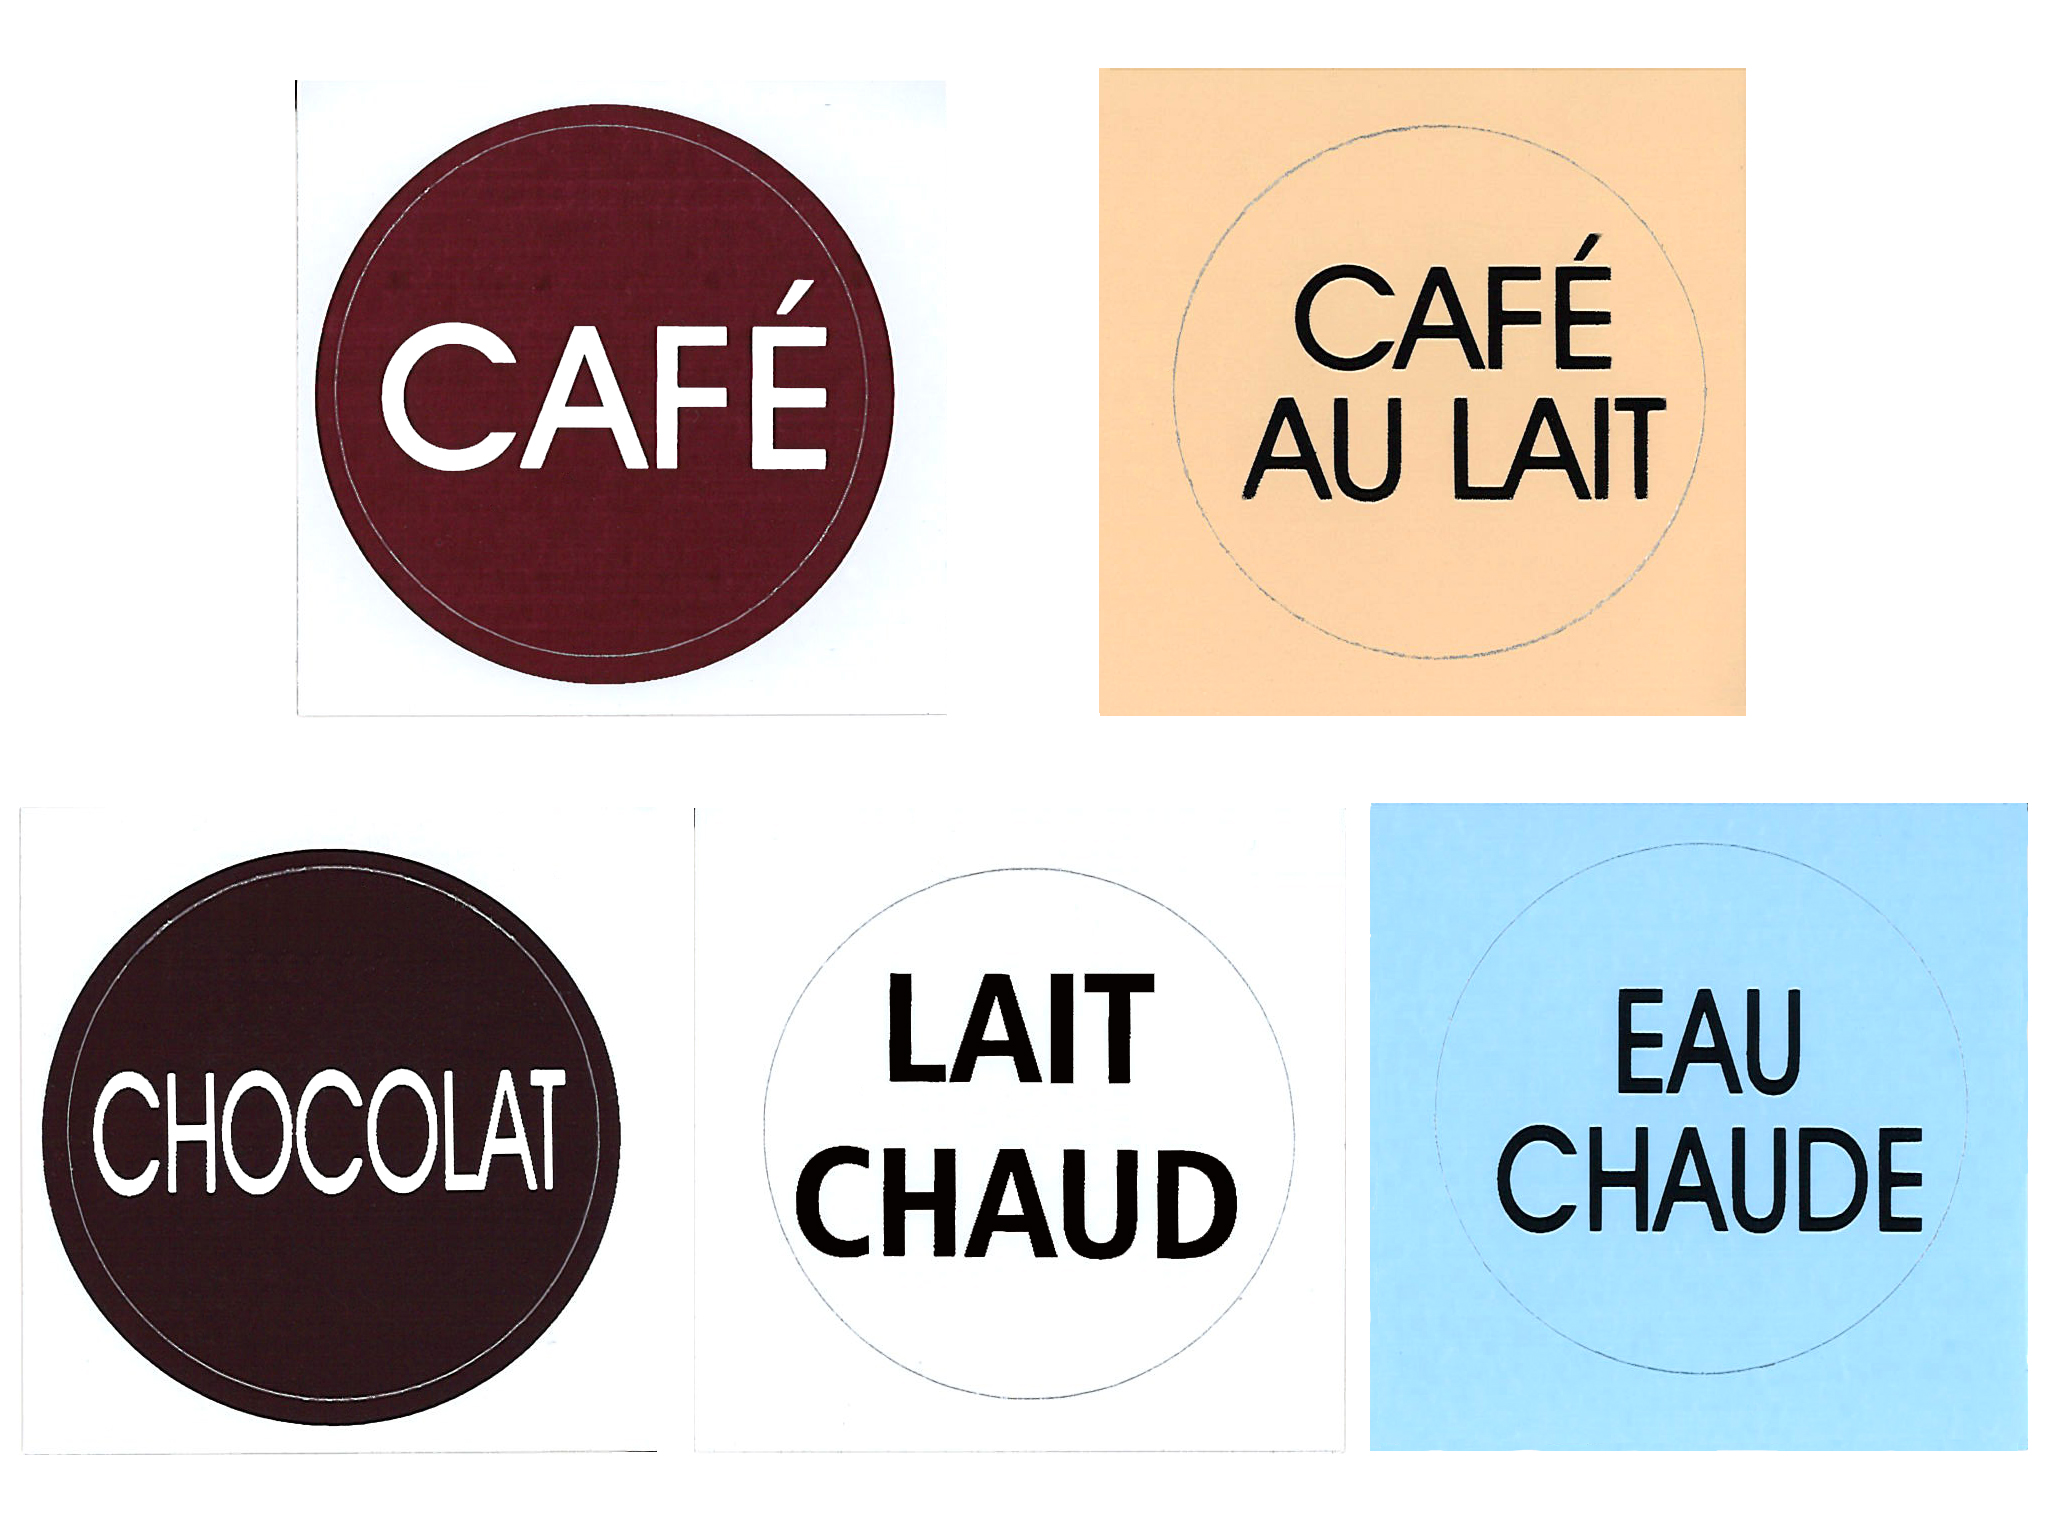 LABEL-CAFE - Bag of 10 Stickers "CAFE" - Isobel